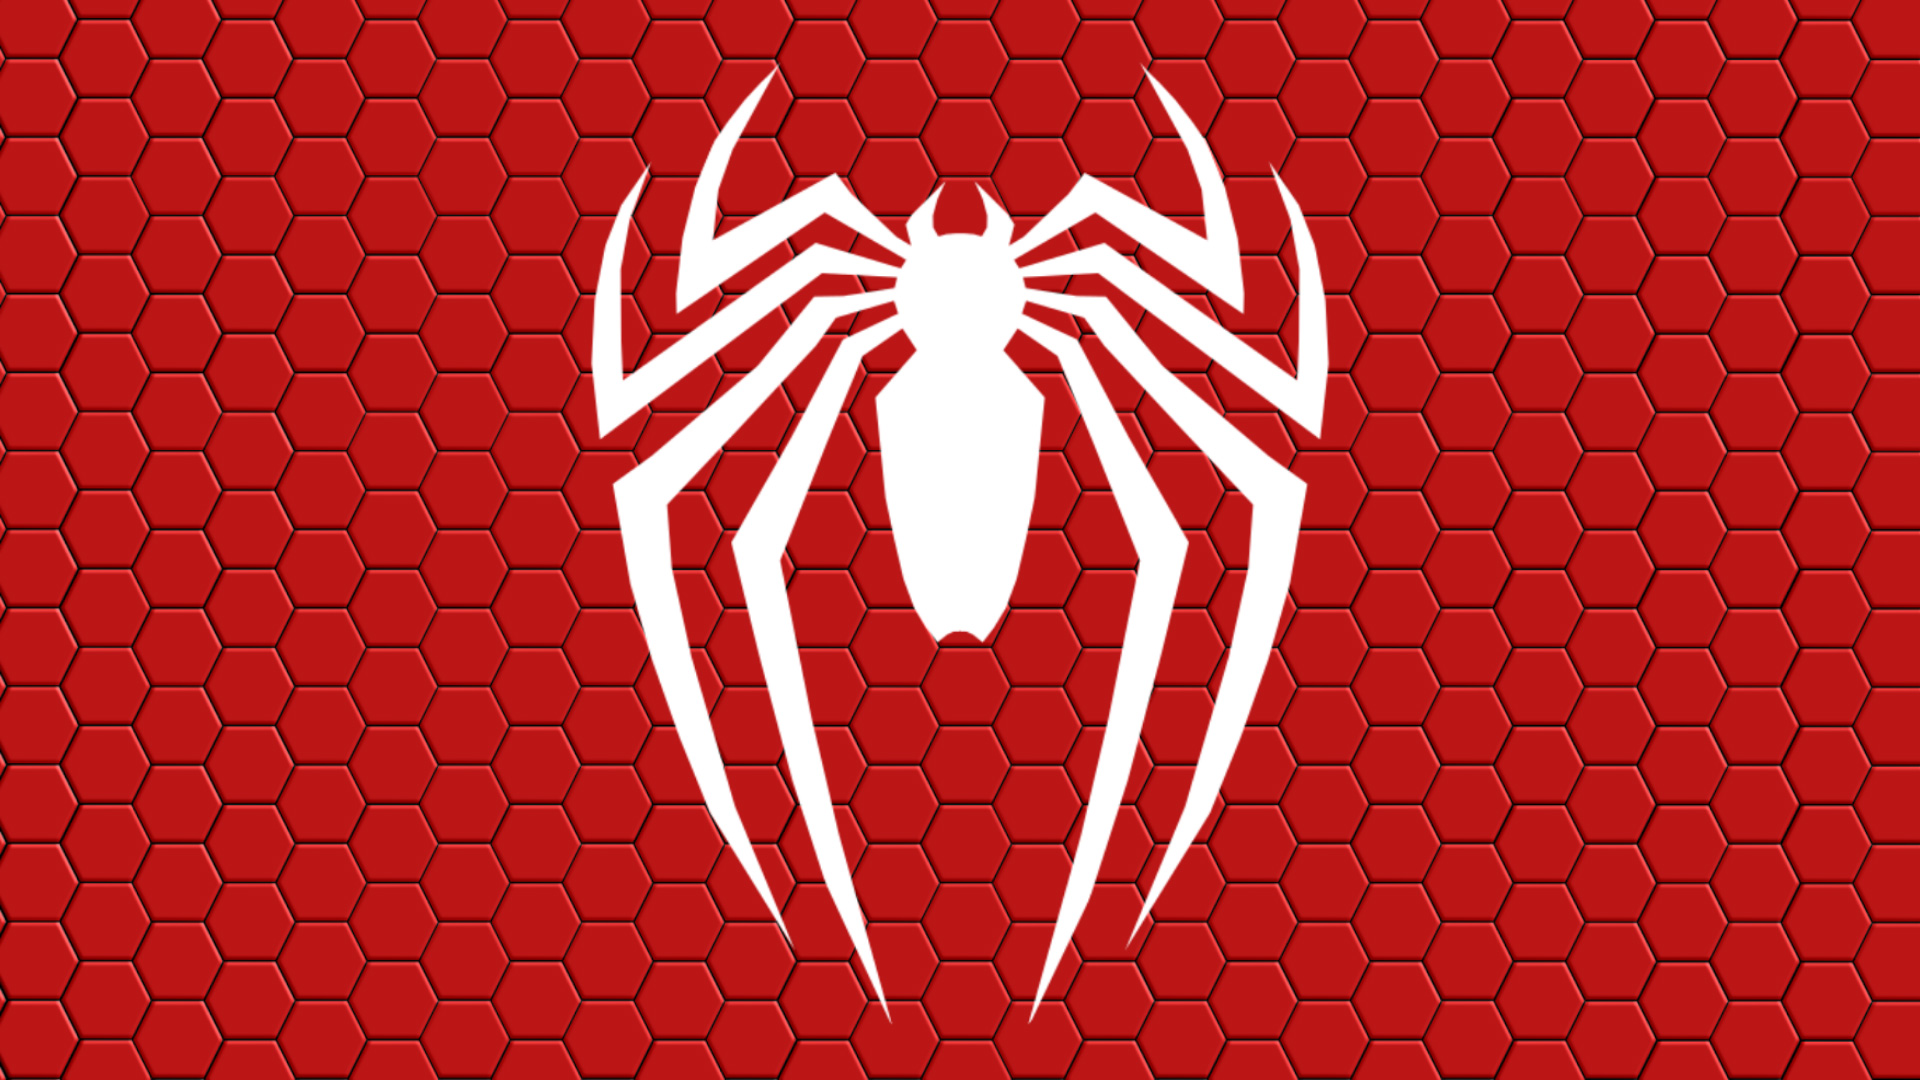 桌面上的壁纸蜘蛛侠 符号 红色背景